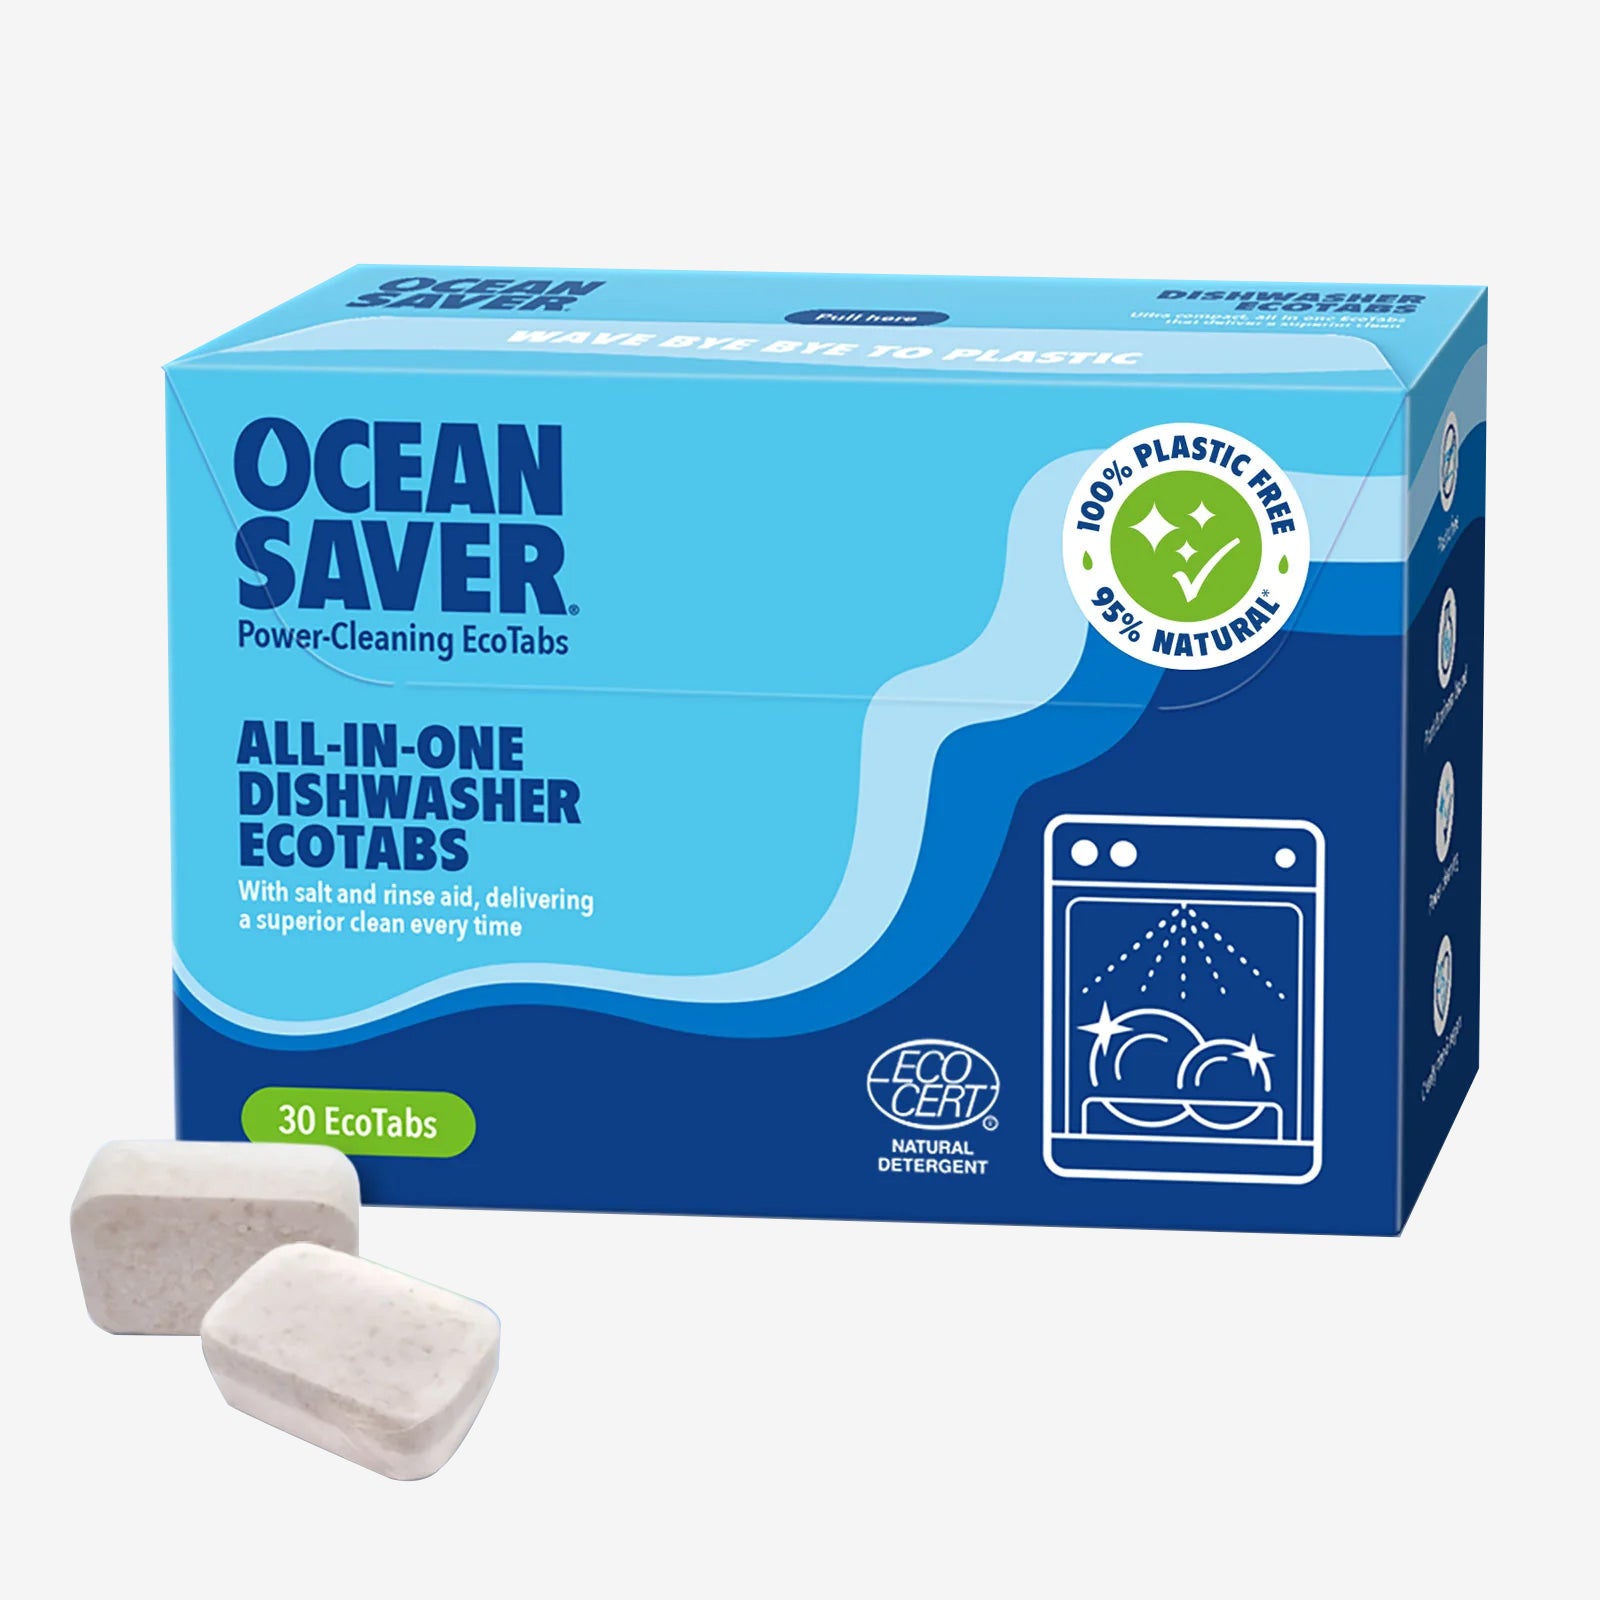 Oceansaver Dishwasher Tablets